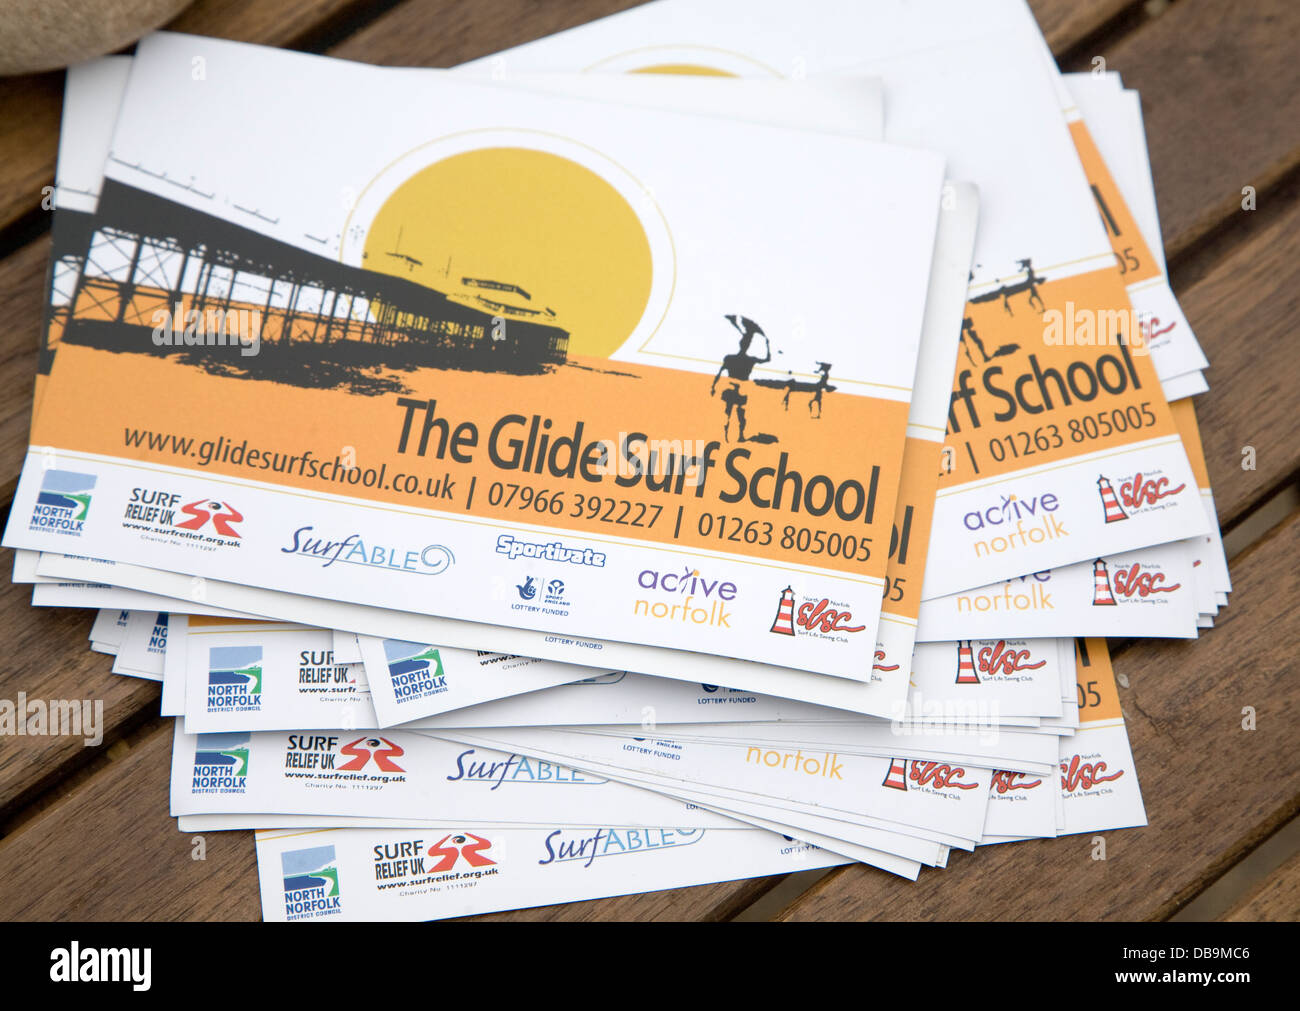 L'alignement de l'École de Surf de Cromer Norfolk Angleterre dépliant publicitaire Banque D'Images